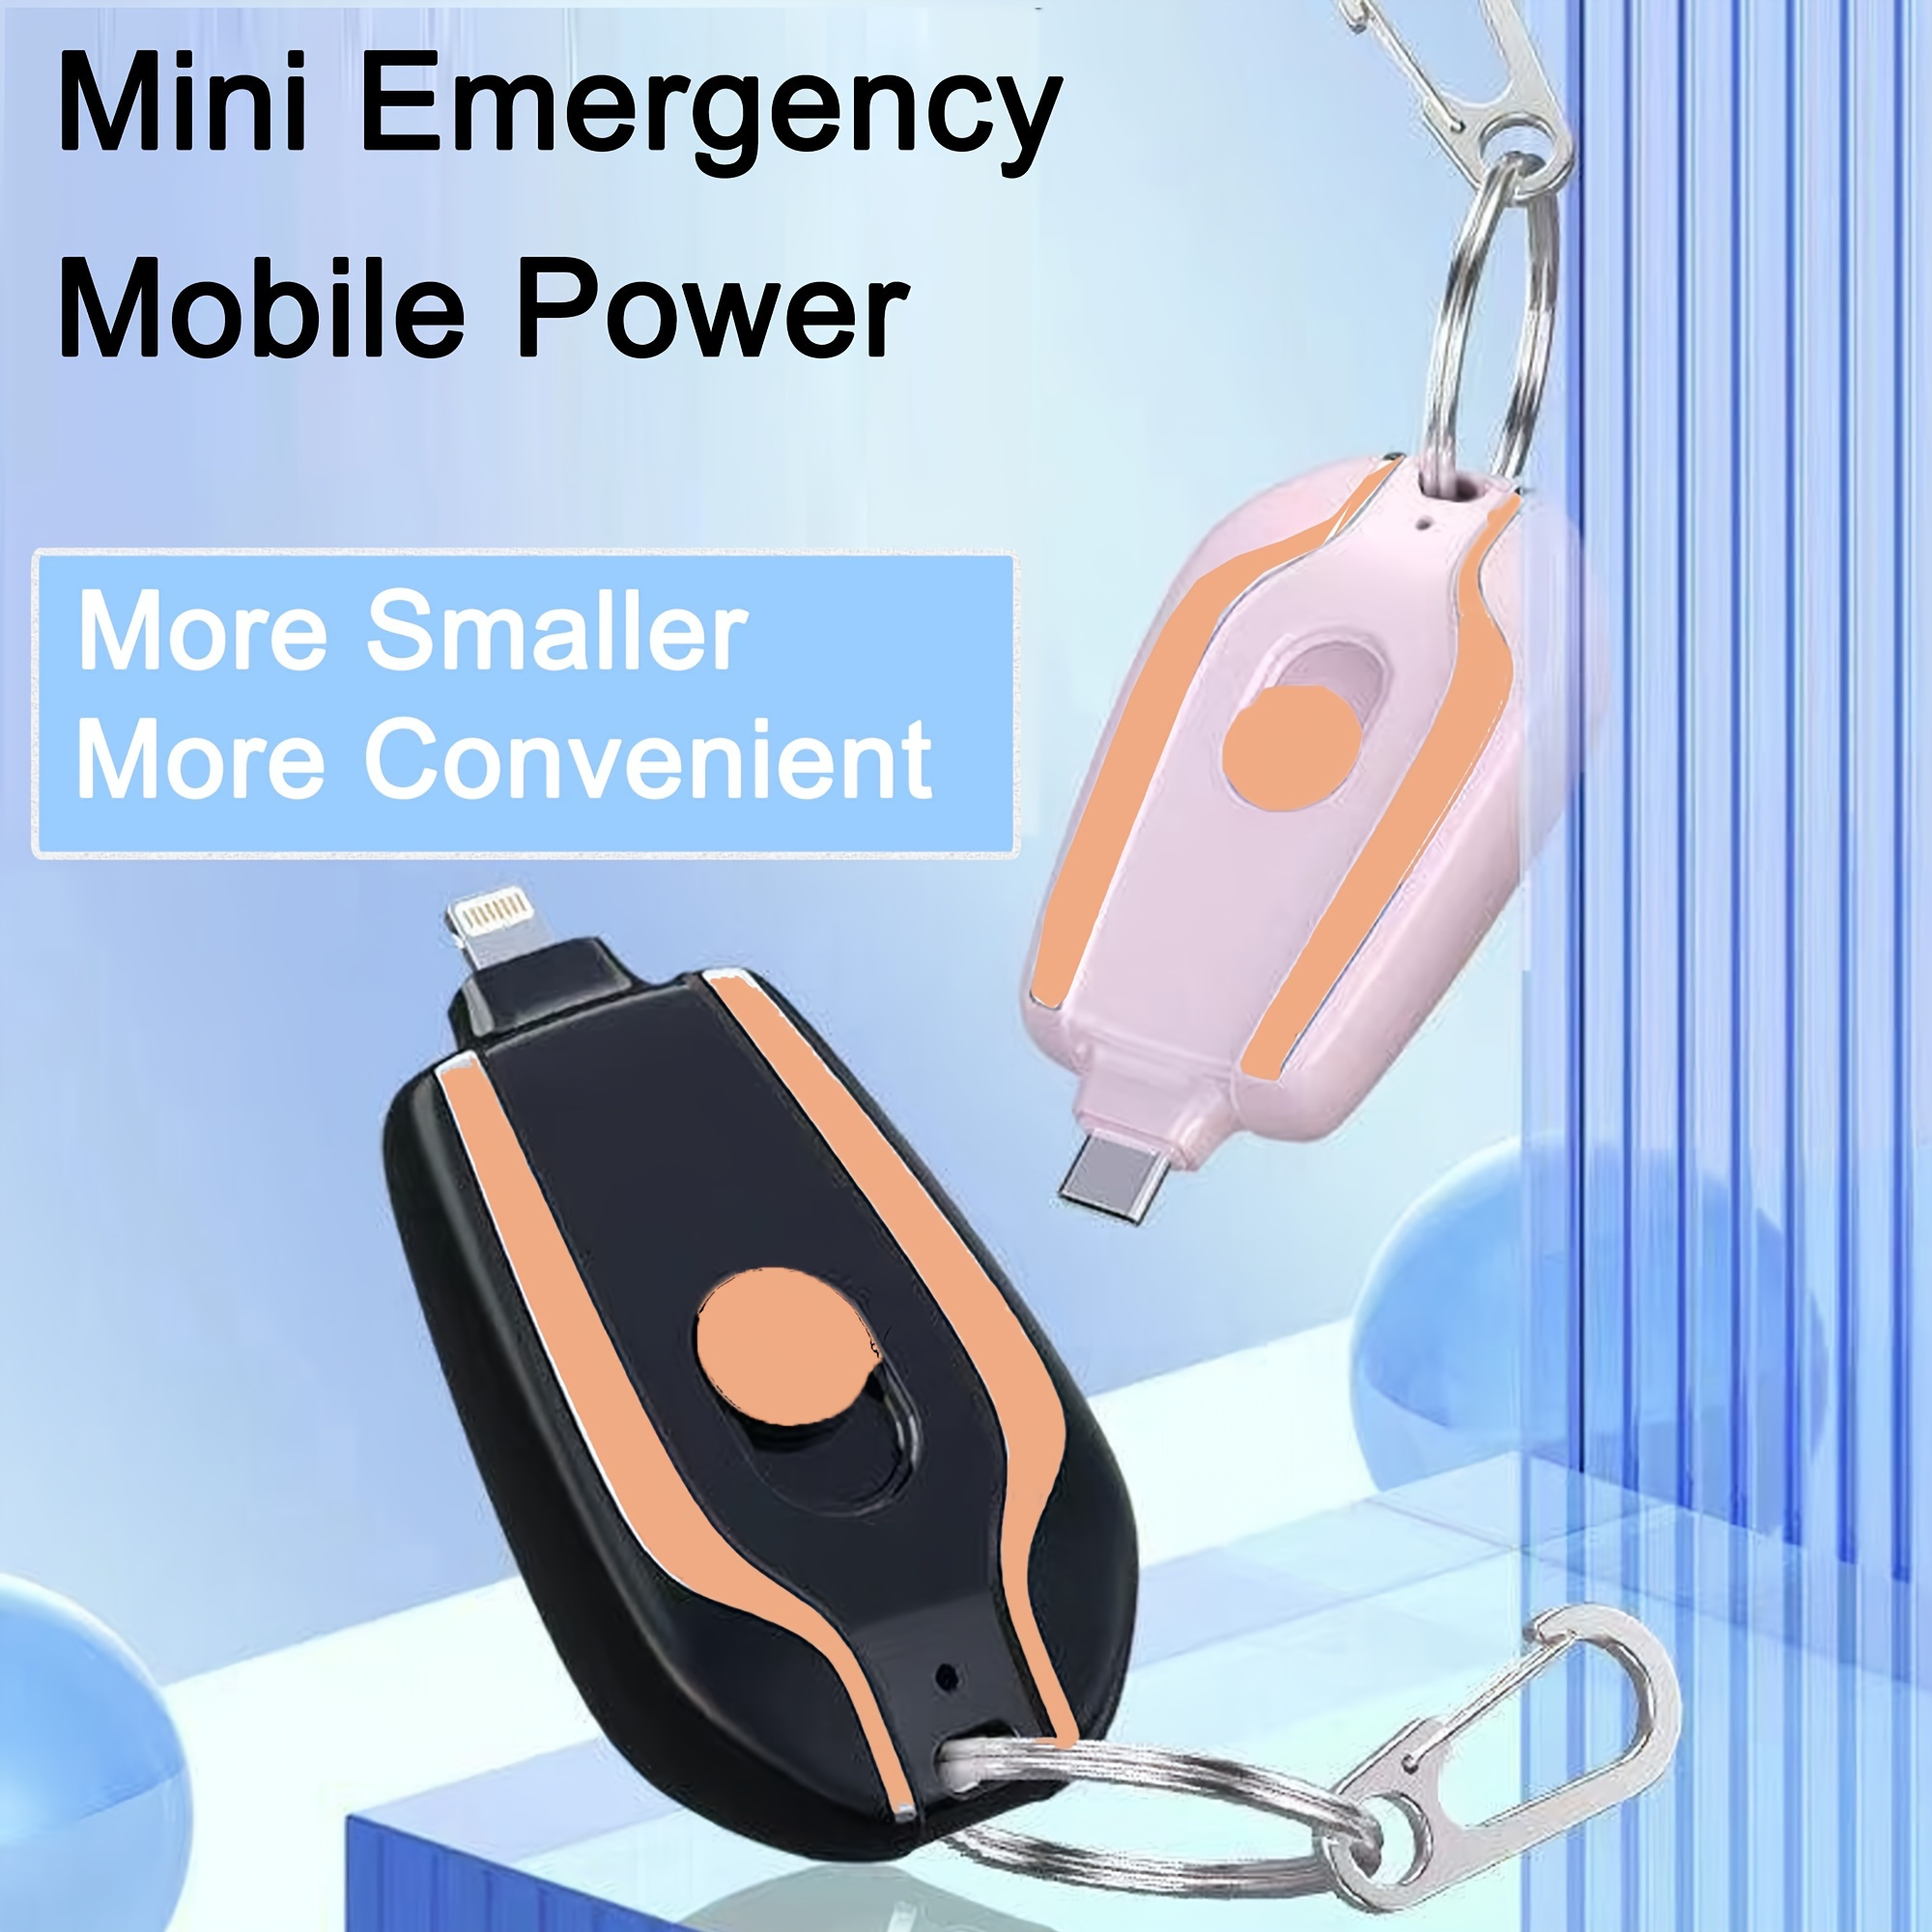 Mini Llavero Powerbank, Cargador para teléfono móvil de llavero, Batería  Externa Pequeña Ultracompacta, 1500 mAh Tipo C (Android) e iOS (Iphone).  Banco de energía de emergencia. Carga rápida.